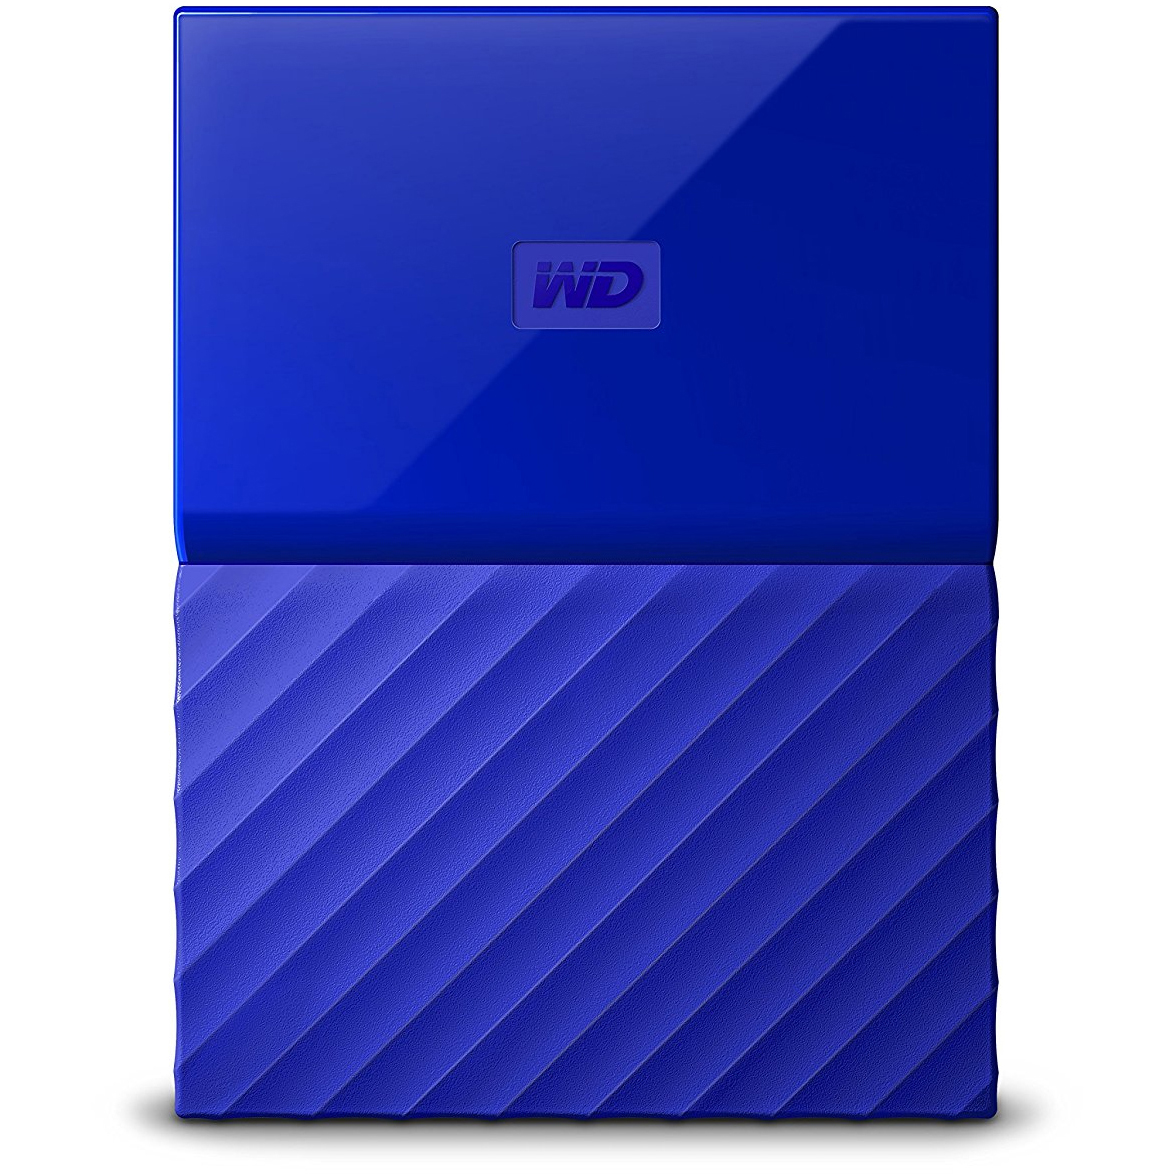 Original Western Digital My Passport 2TB Blue USB 3.0 External Hard Drive (WDBS4B0020BBL-EEEX)